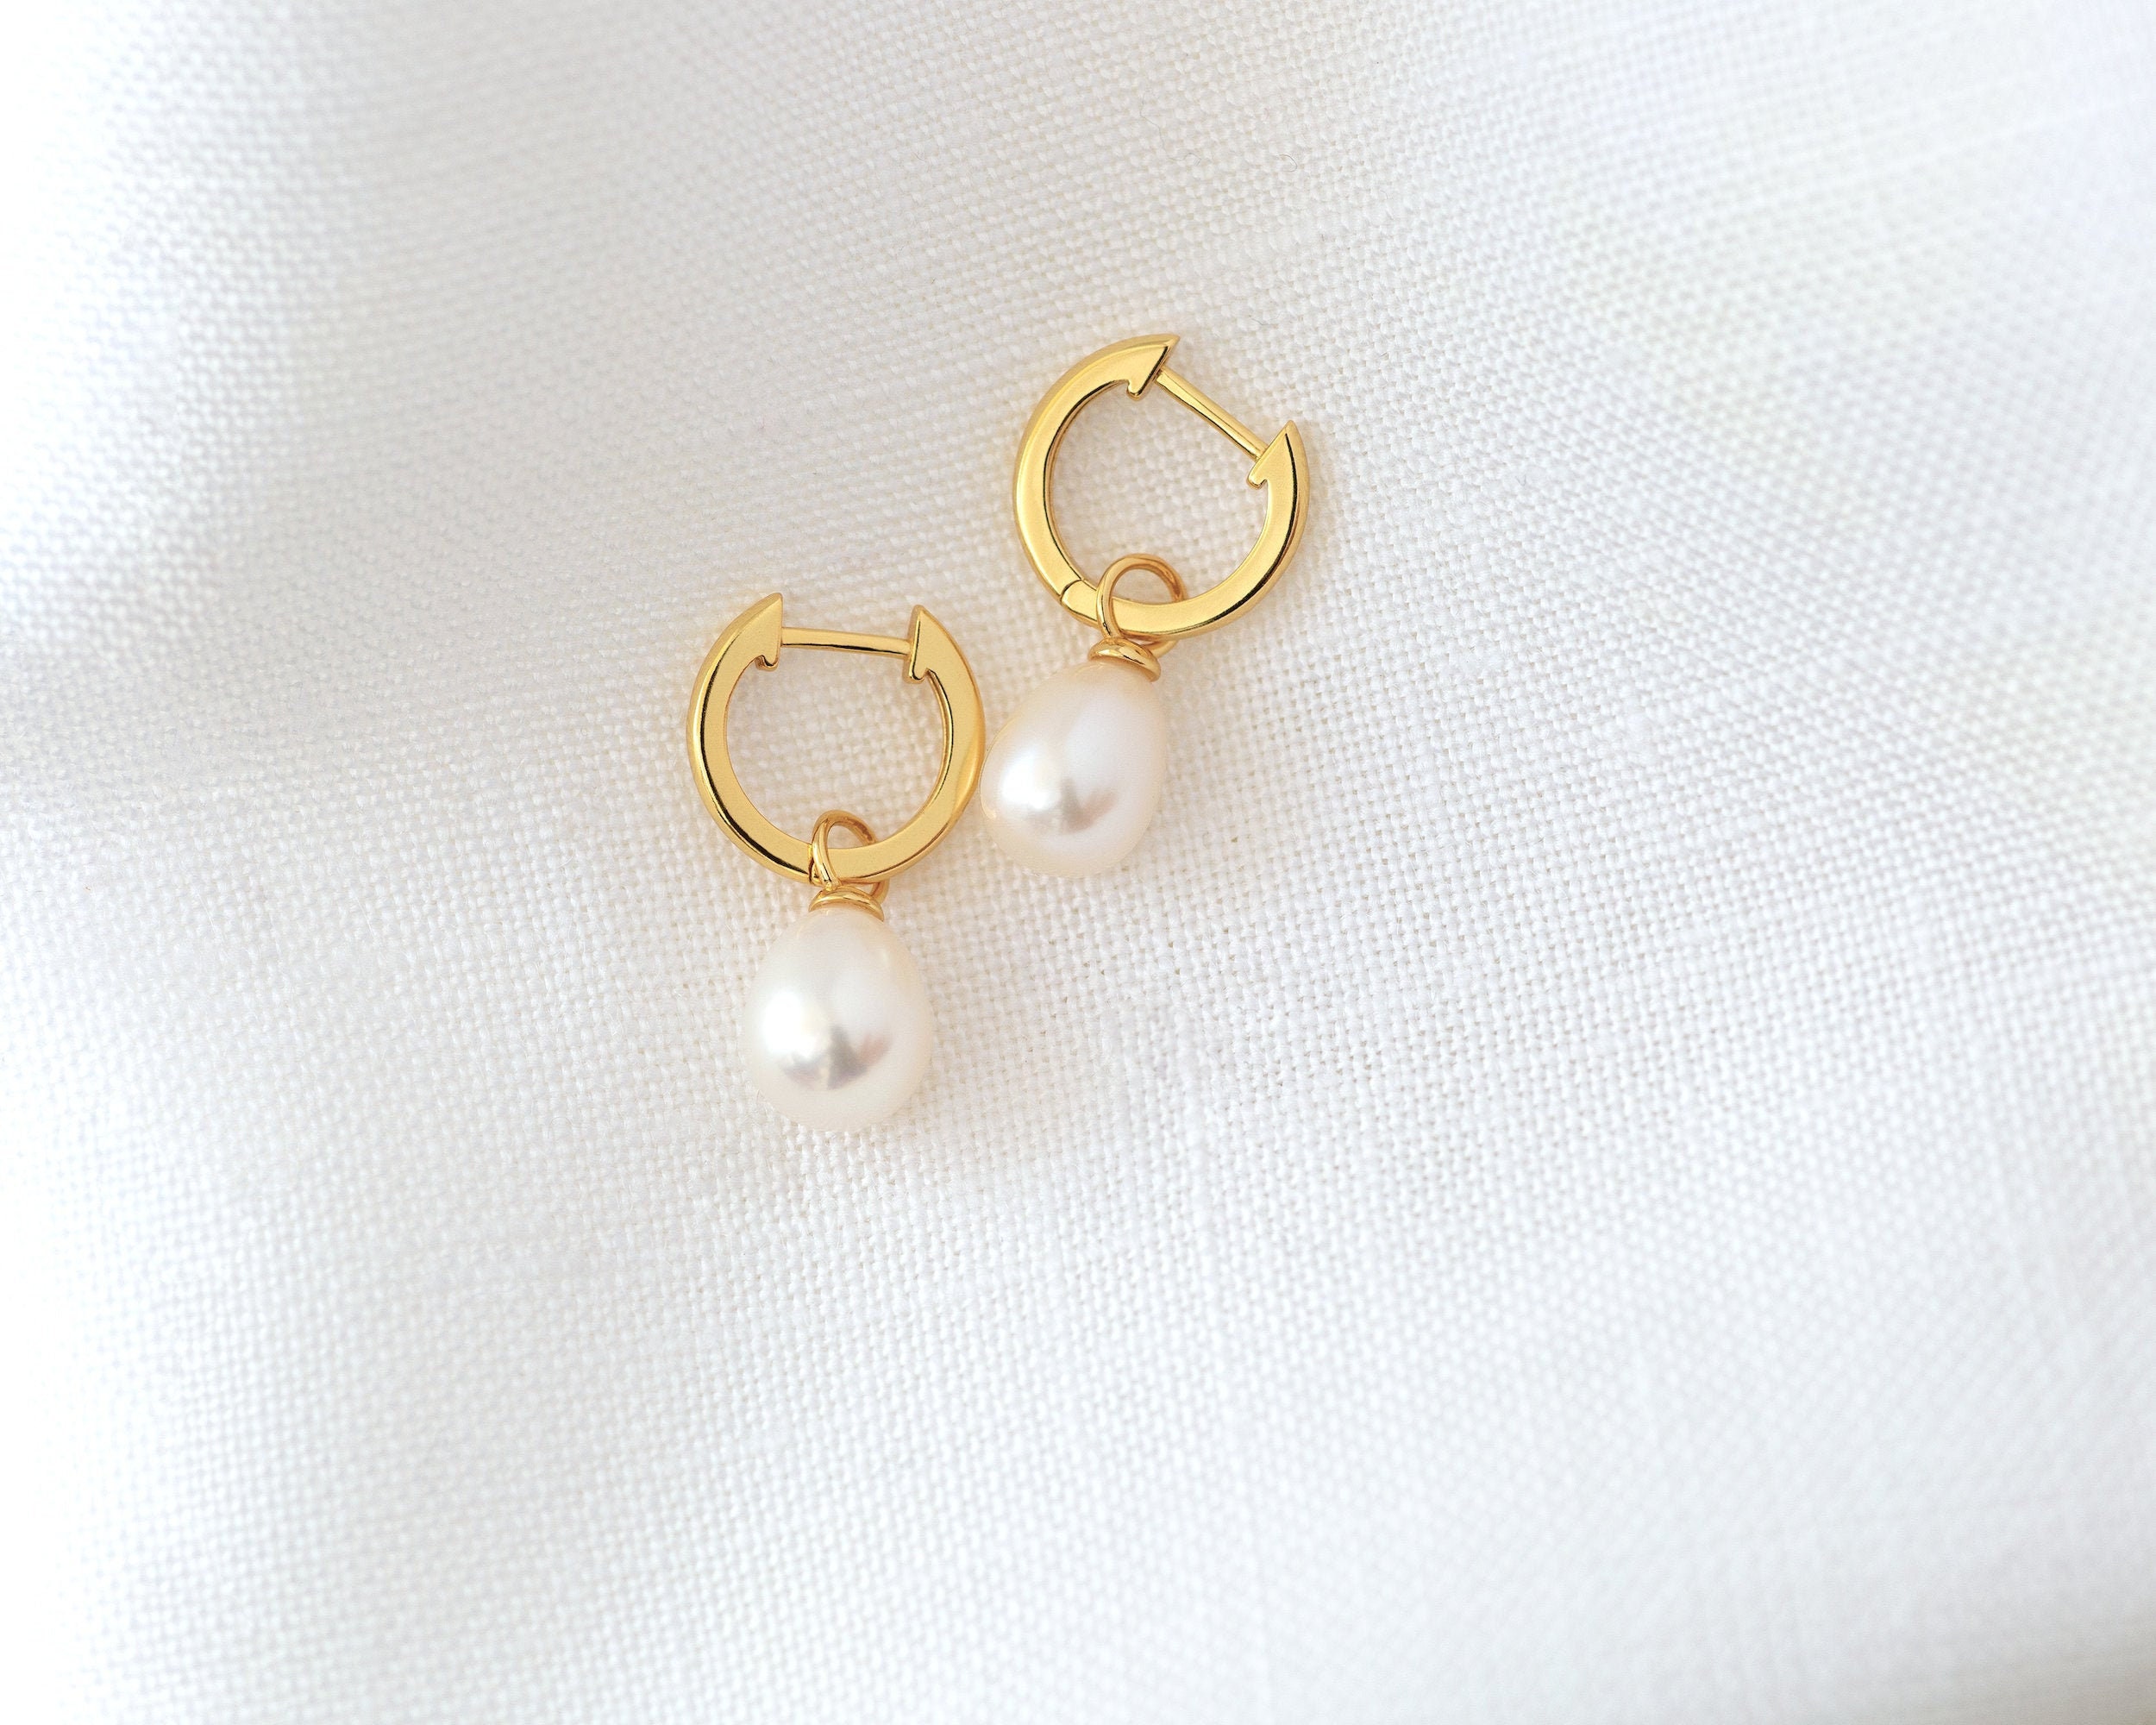 Naioewe Conch Earrings Gold Hoop Pearl Earrings Heart Hoop Earrings Stud  Hoop Earrings Small Gold Hoops Gold Plated Small Hoops 